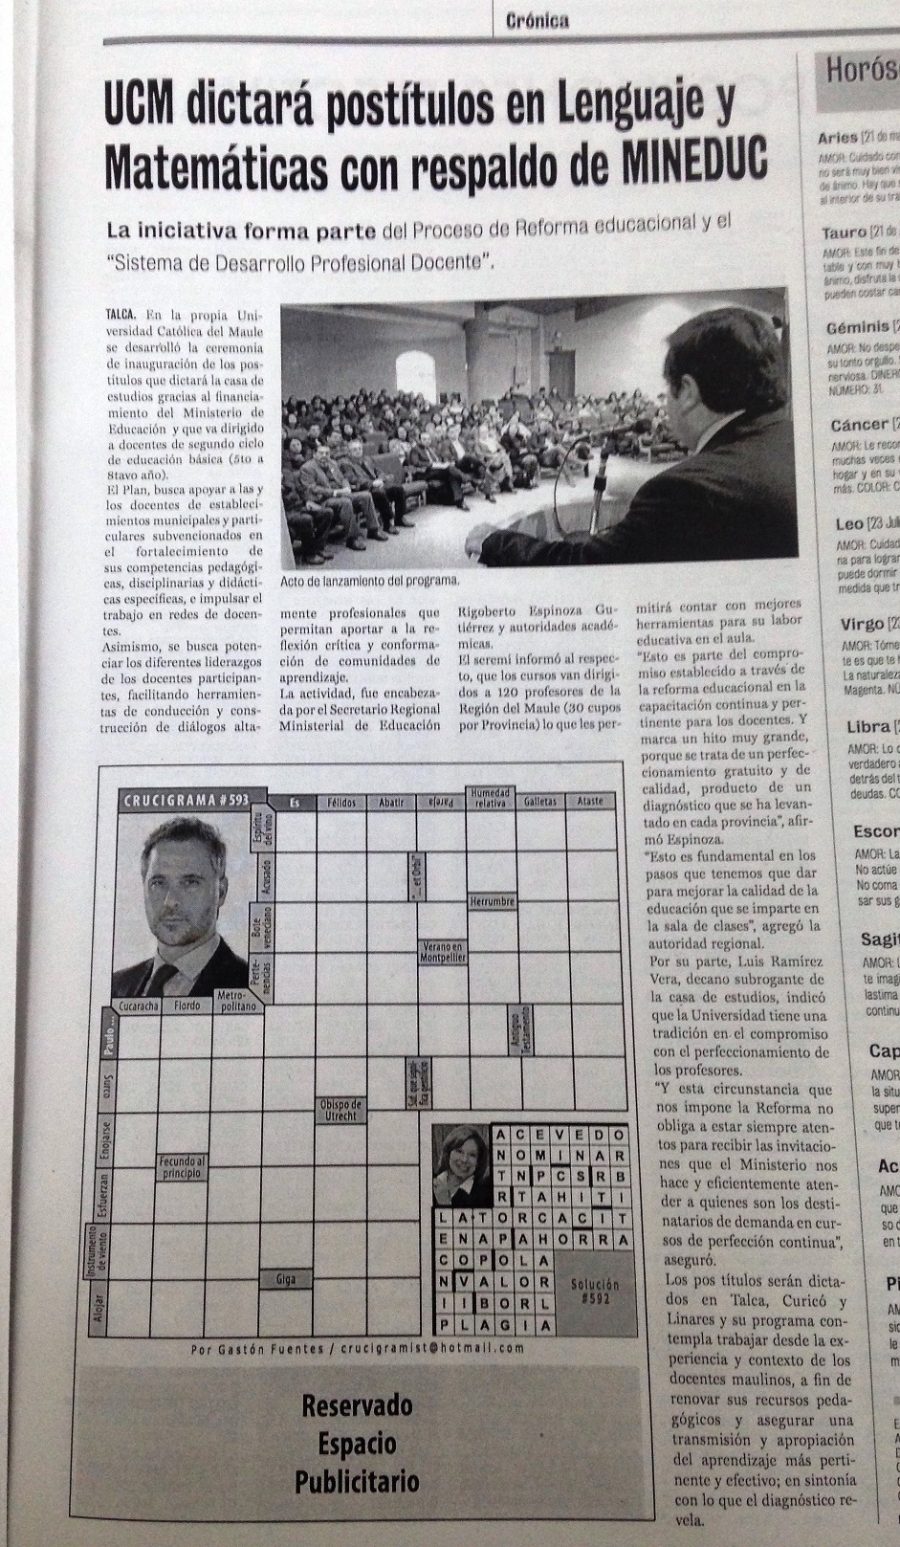 15 de mayo en Diario La Prensa: “UCM dictará postítulos en Lenguaje y Matemáticas con respaldo de MINEDUC”